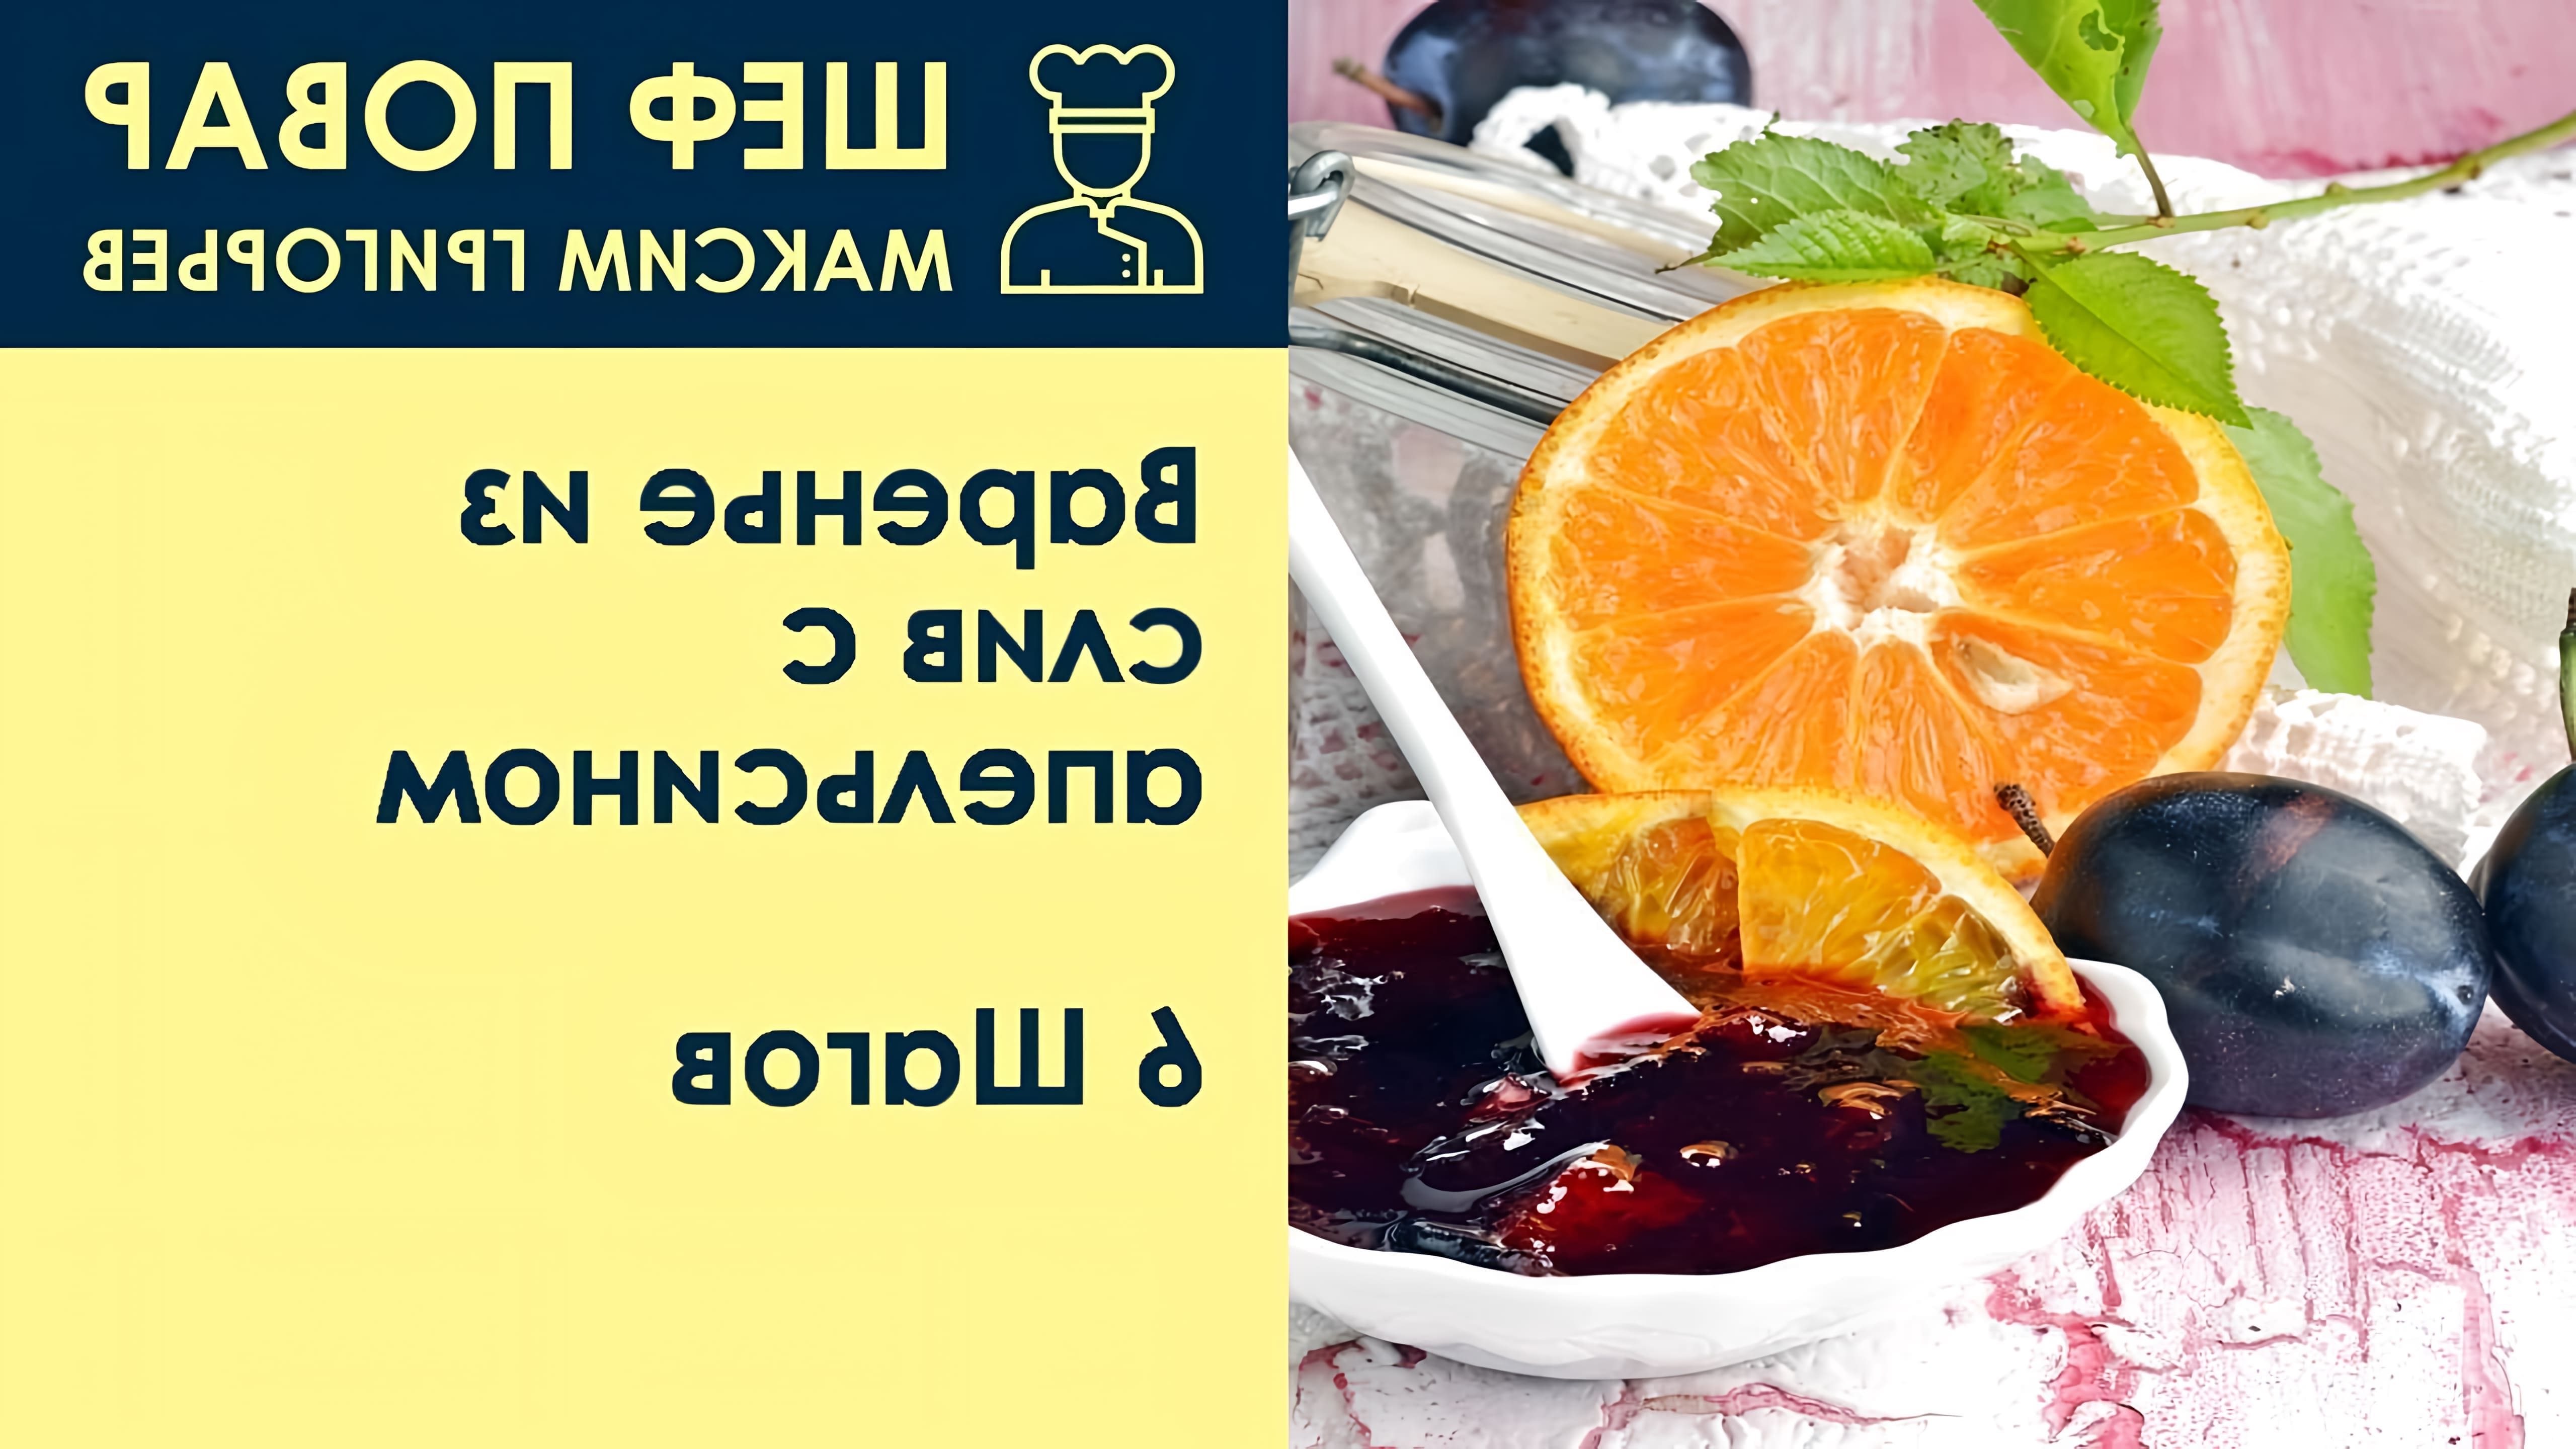 В данном видео шеф-повар Максим Григорьев демонстрирует рецепт приготовления варенья из слив с апельсином